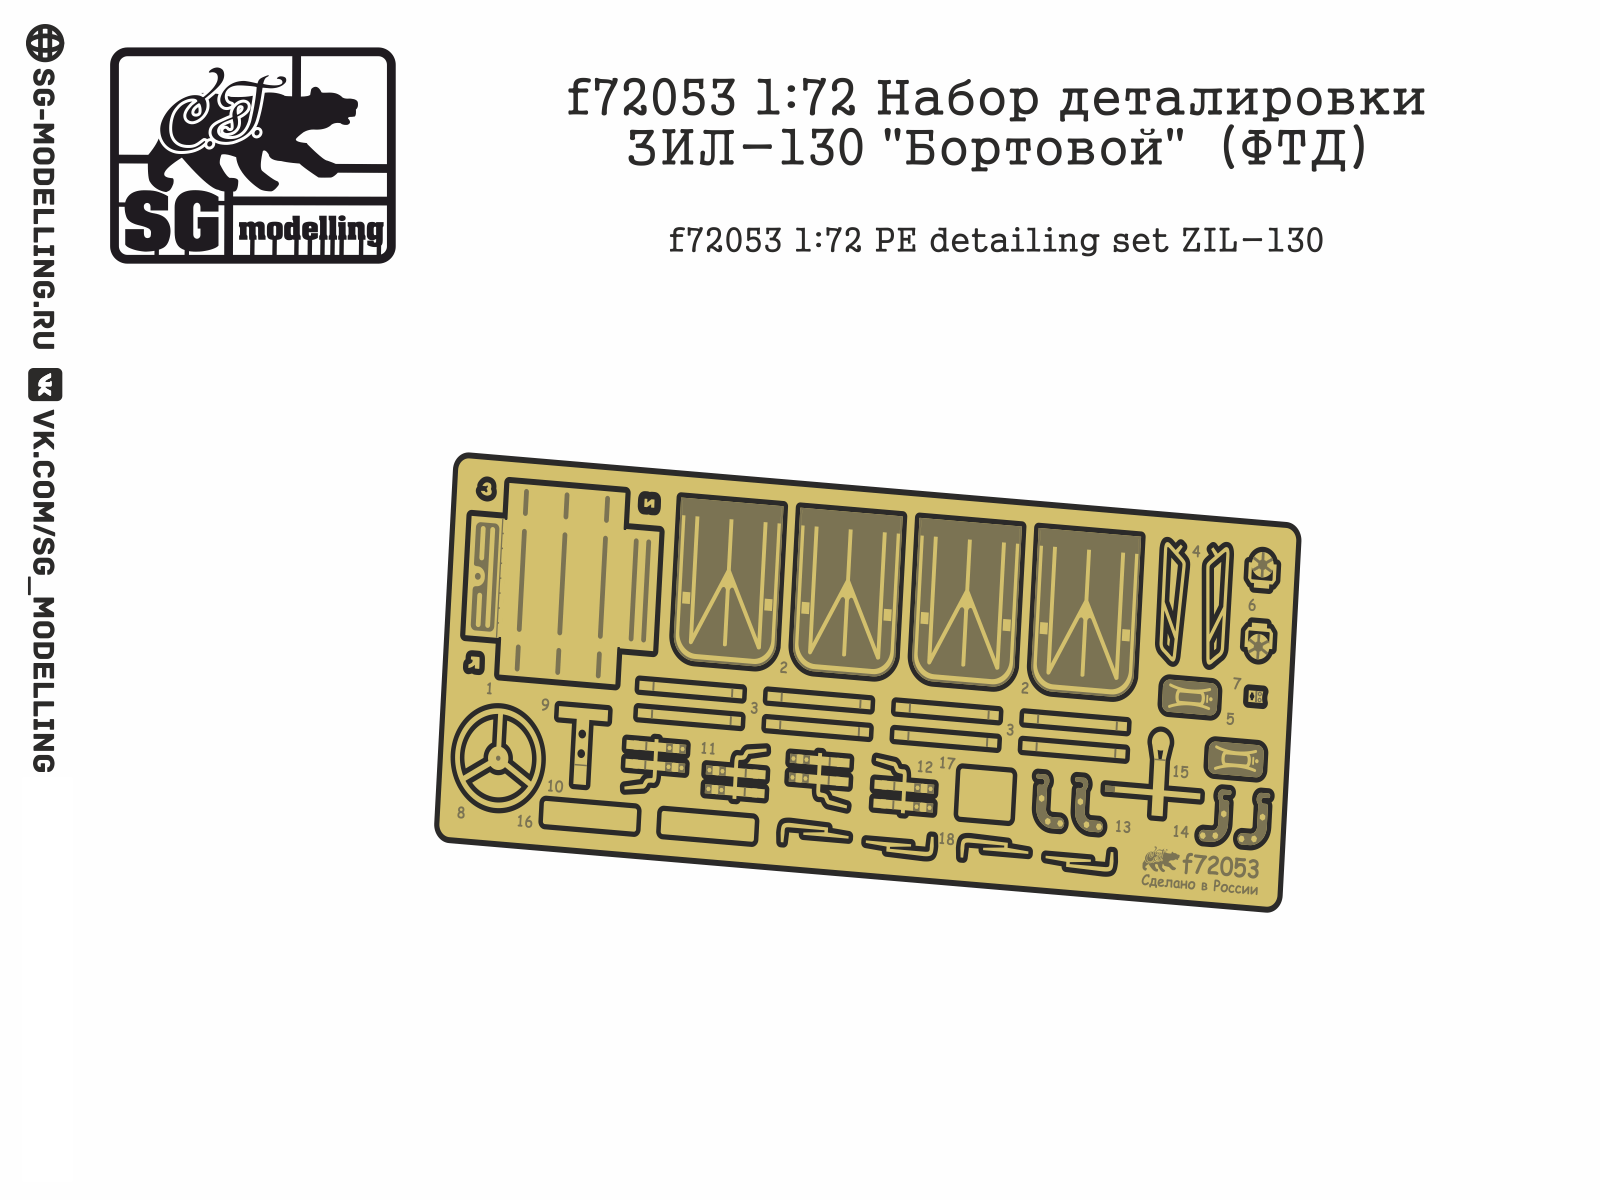 F72053 1:72 Set of Detailing ZIL-130 "Bortova" (FTD) - imodeller.store